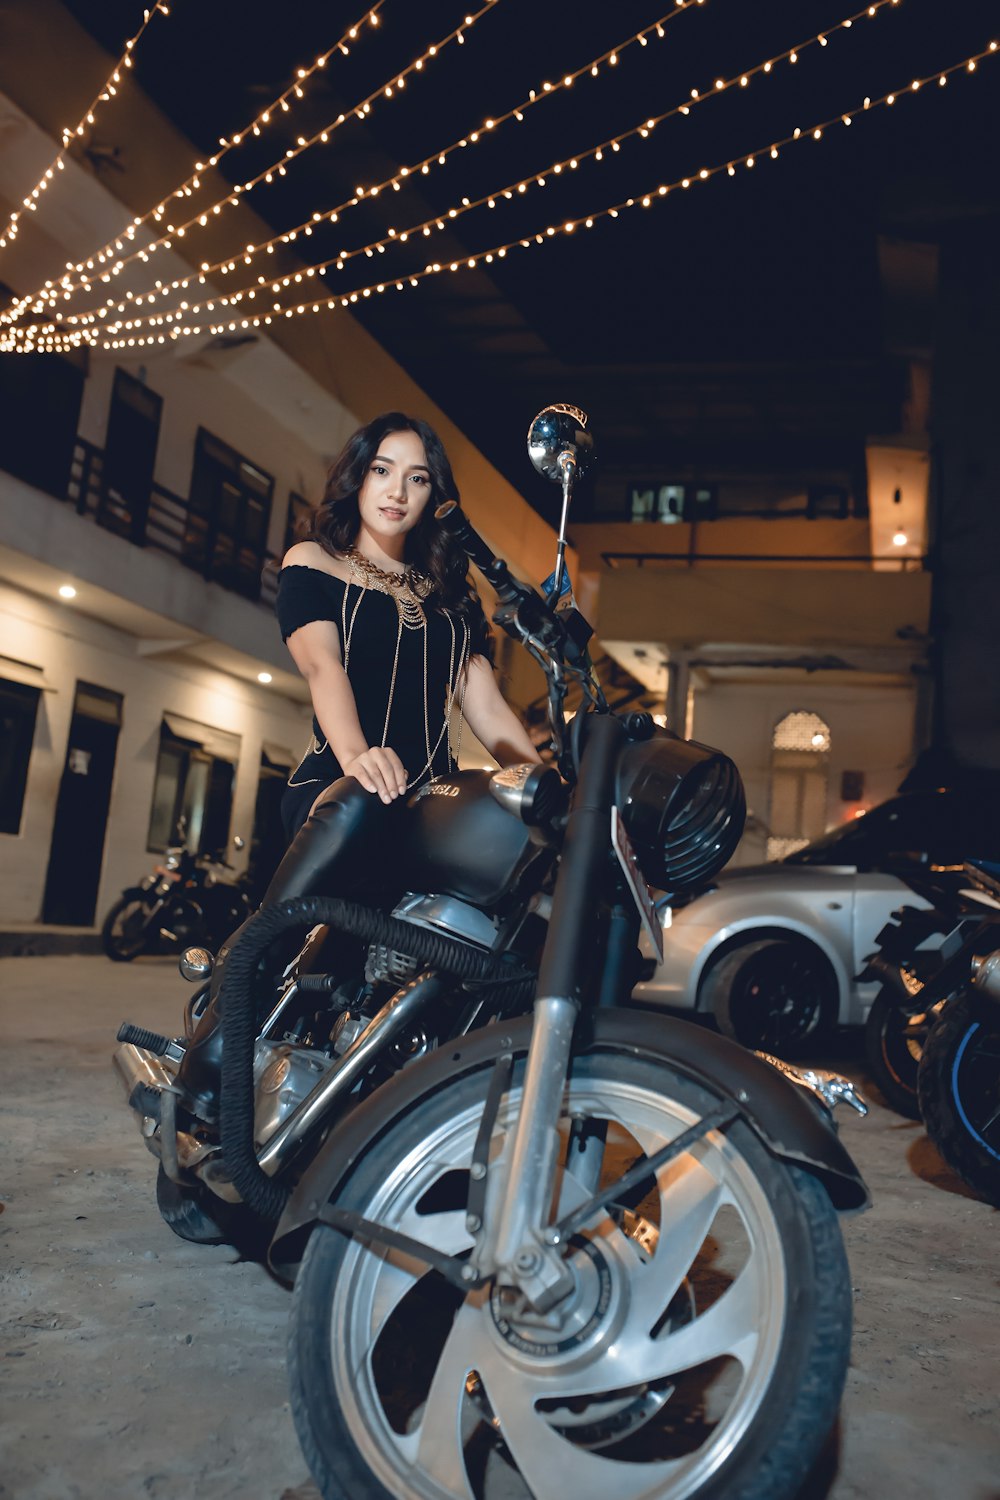 Frau in schwarzem Kleid fährt nachts auf einem schwarzen Motorrad